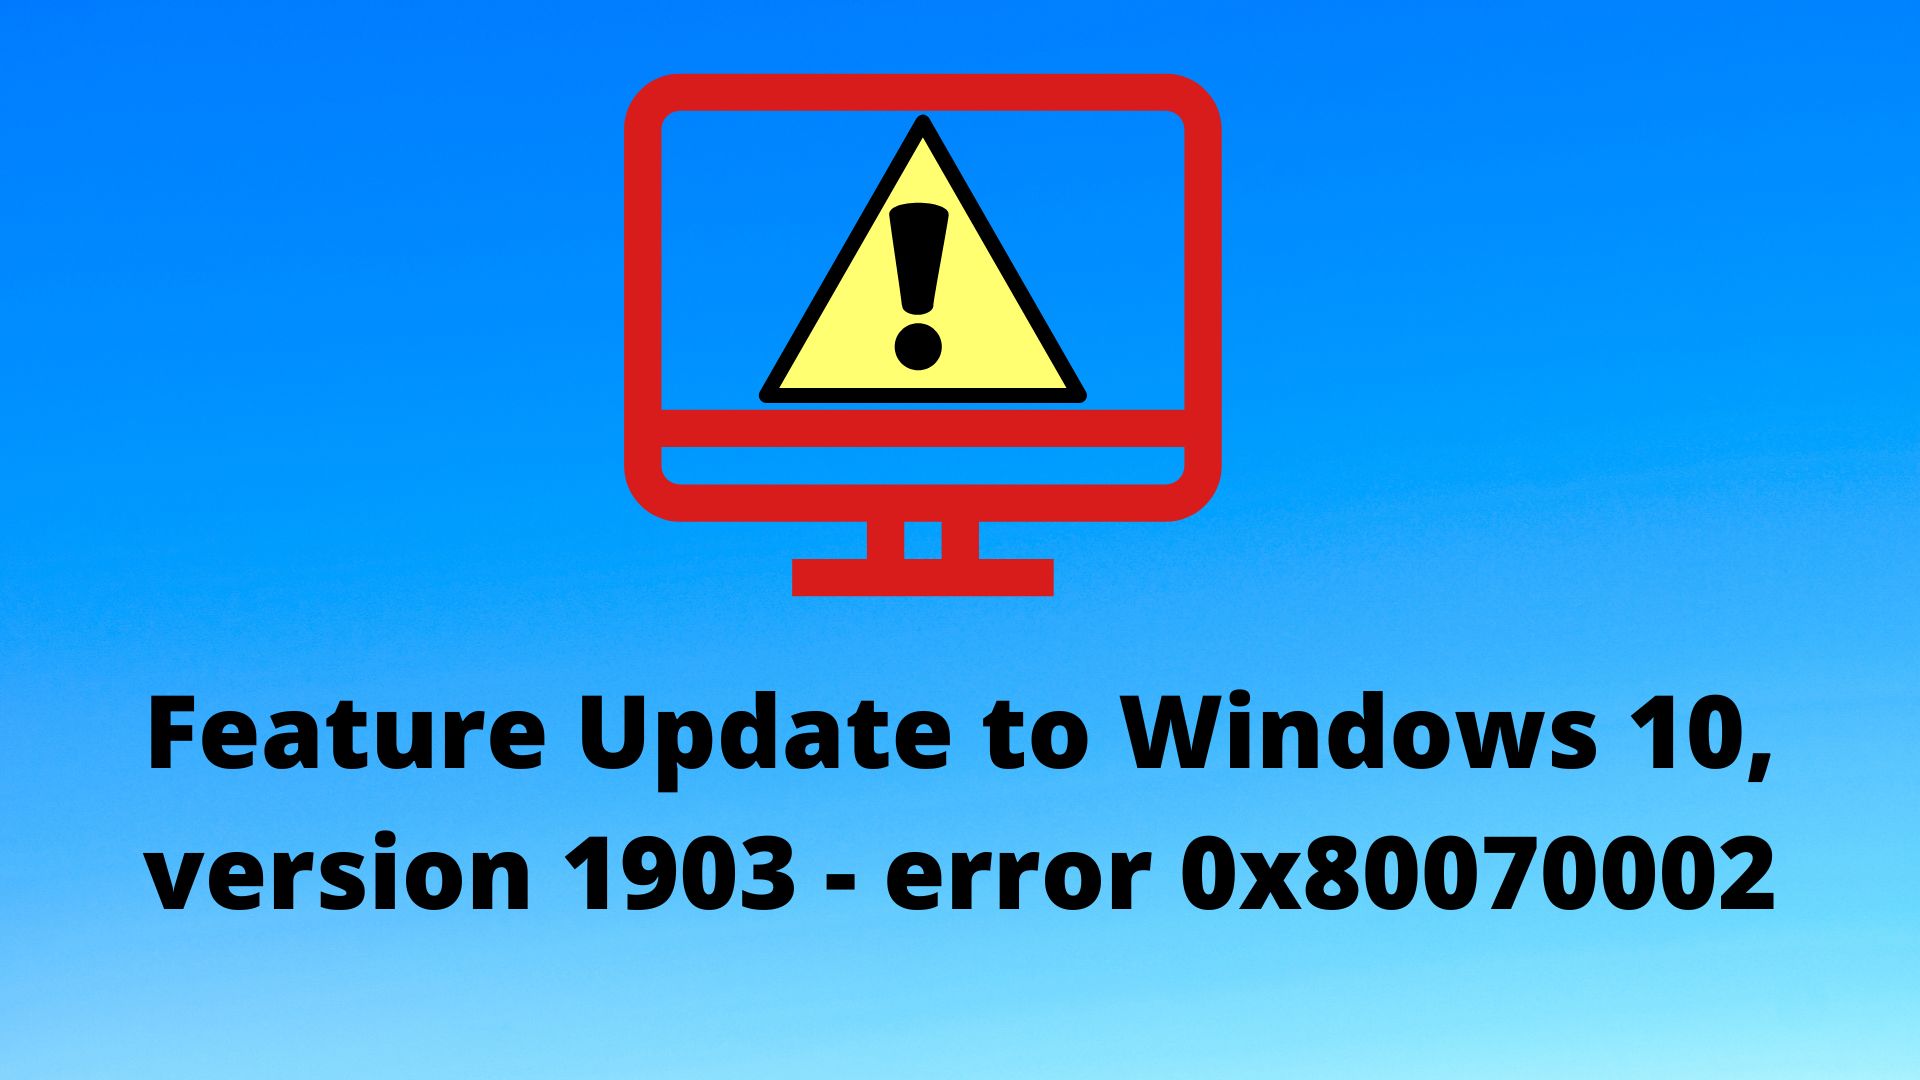 Feature Update to Windows 10, Version 1903 - Error 0x80070002